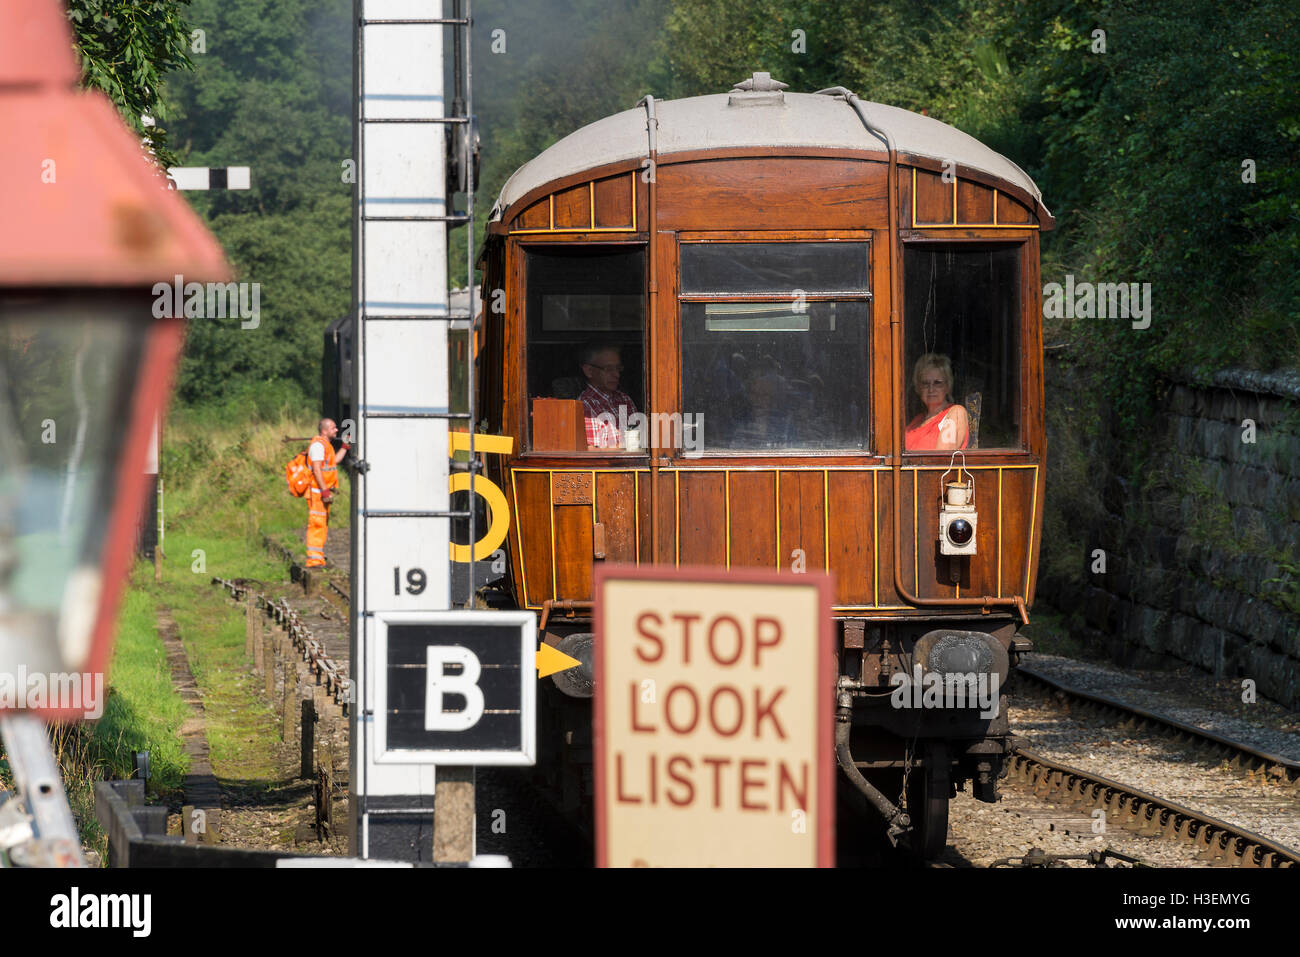 Voiture d'observation à l'arrière du train de quitter Goathland sur North York Moors Railway Goathland Yorkshire Angleterre Royaume-Uni UK Banque D'Images